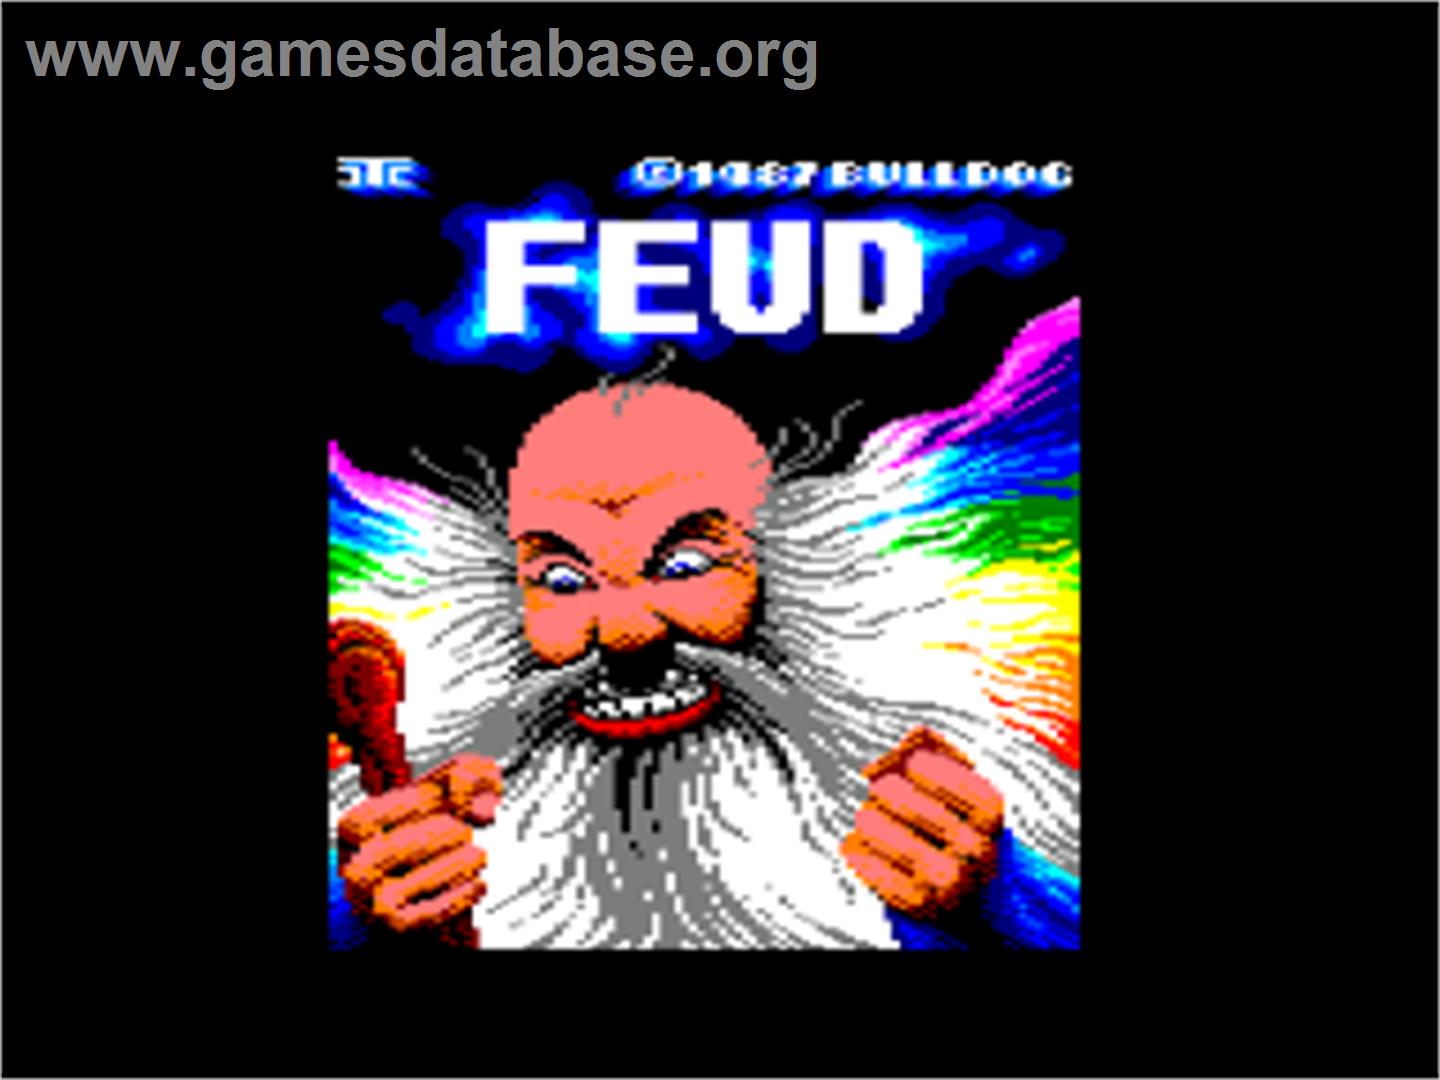 Fred - Amstrad CPC - Artwork - Title Screen